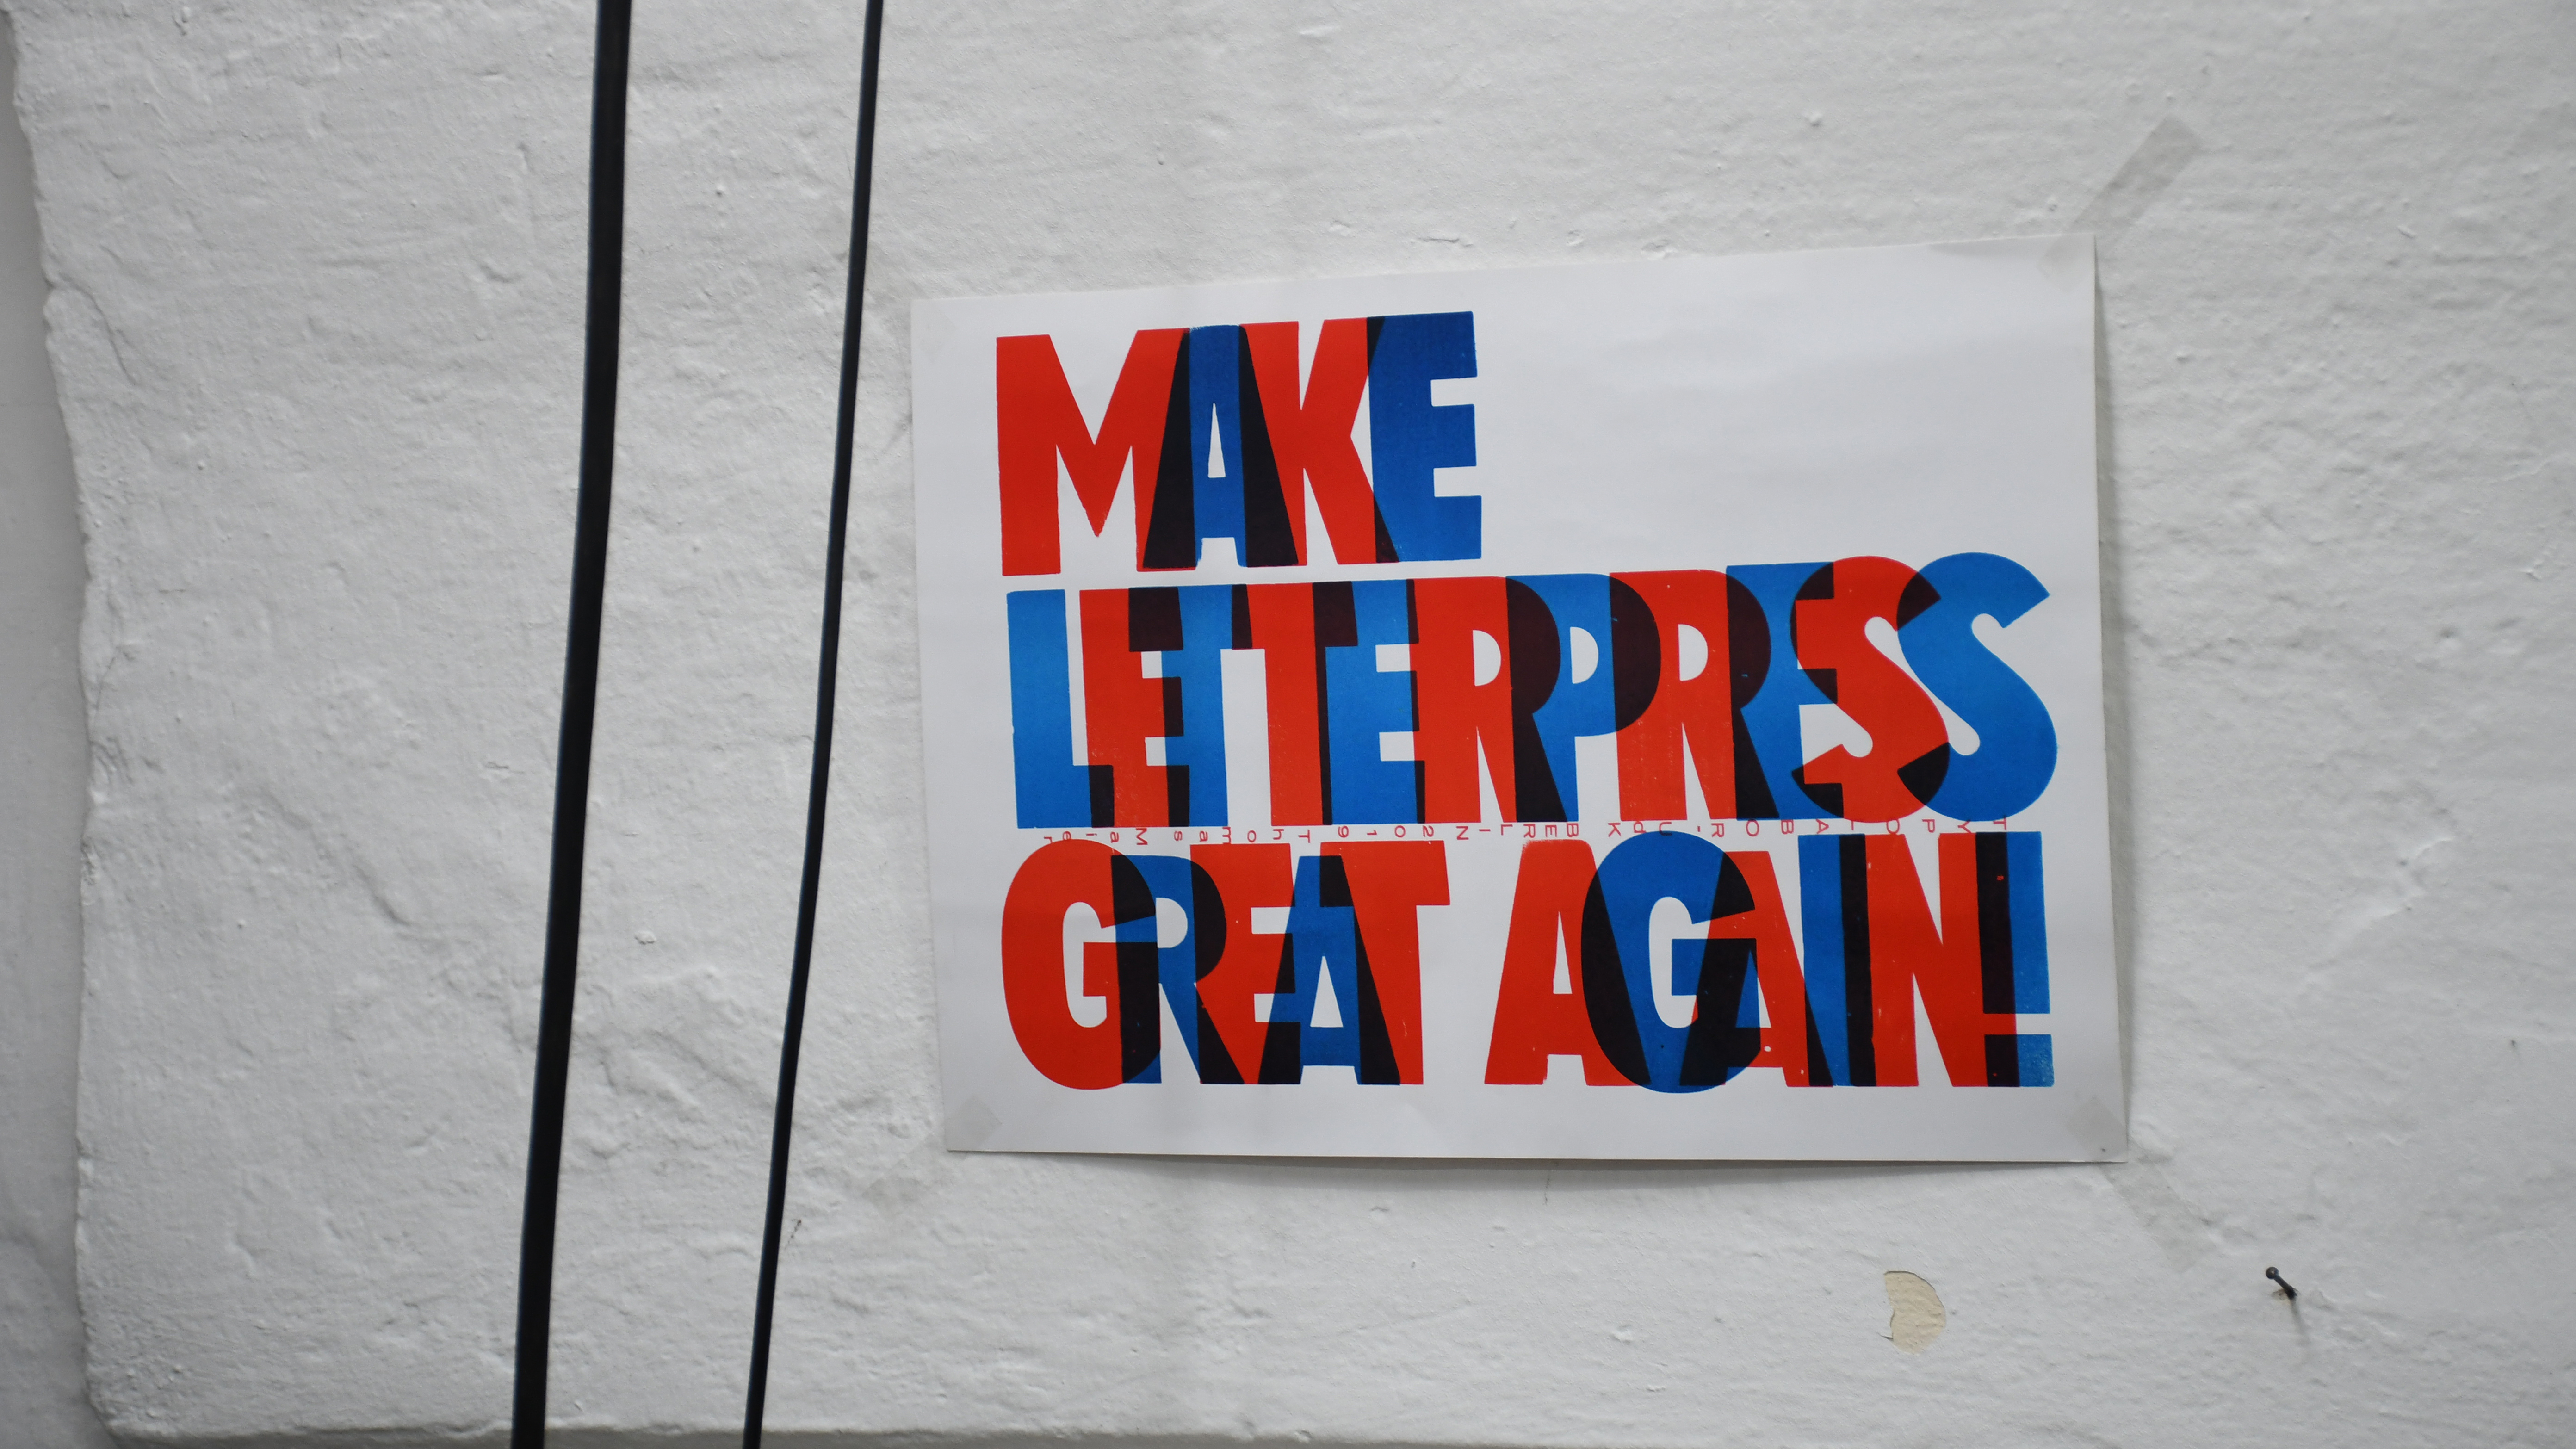 Poster mit der Aufschrift "MAKE LETTERPRESS GREAT AGAIN"